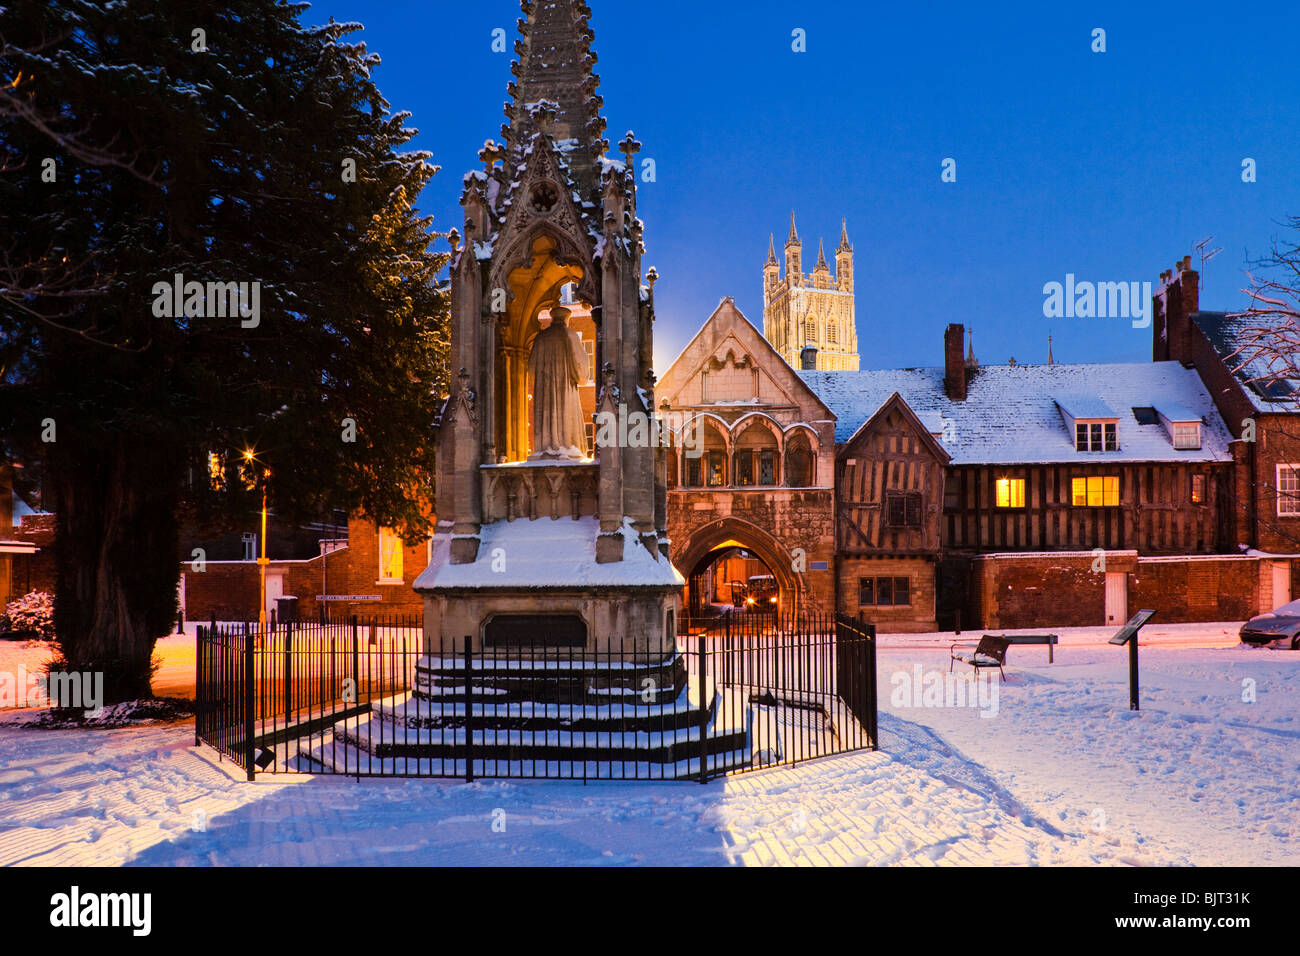 Die Dämmerung fällt auf Winterschnee am Bishop Hooper's Monument auf dem St. Mary's Square neben der Gloucester Cathedral UK Stockfoto